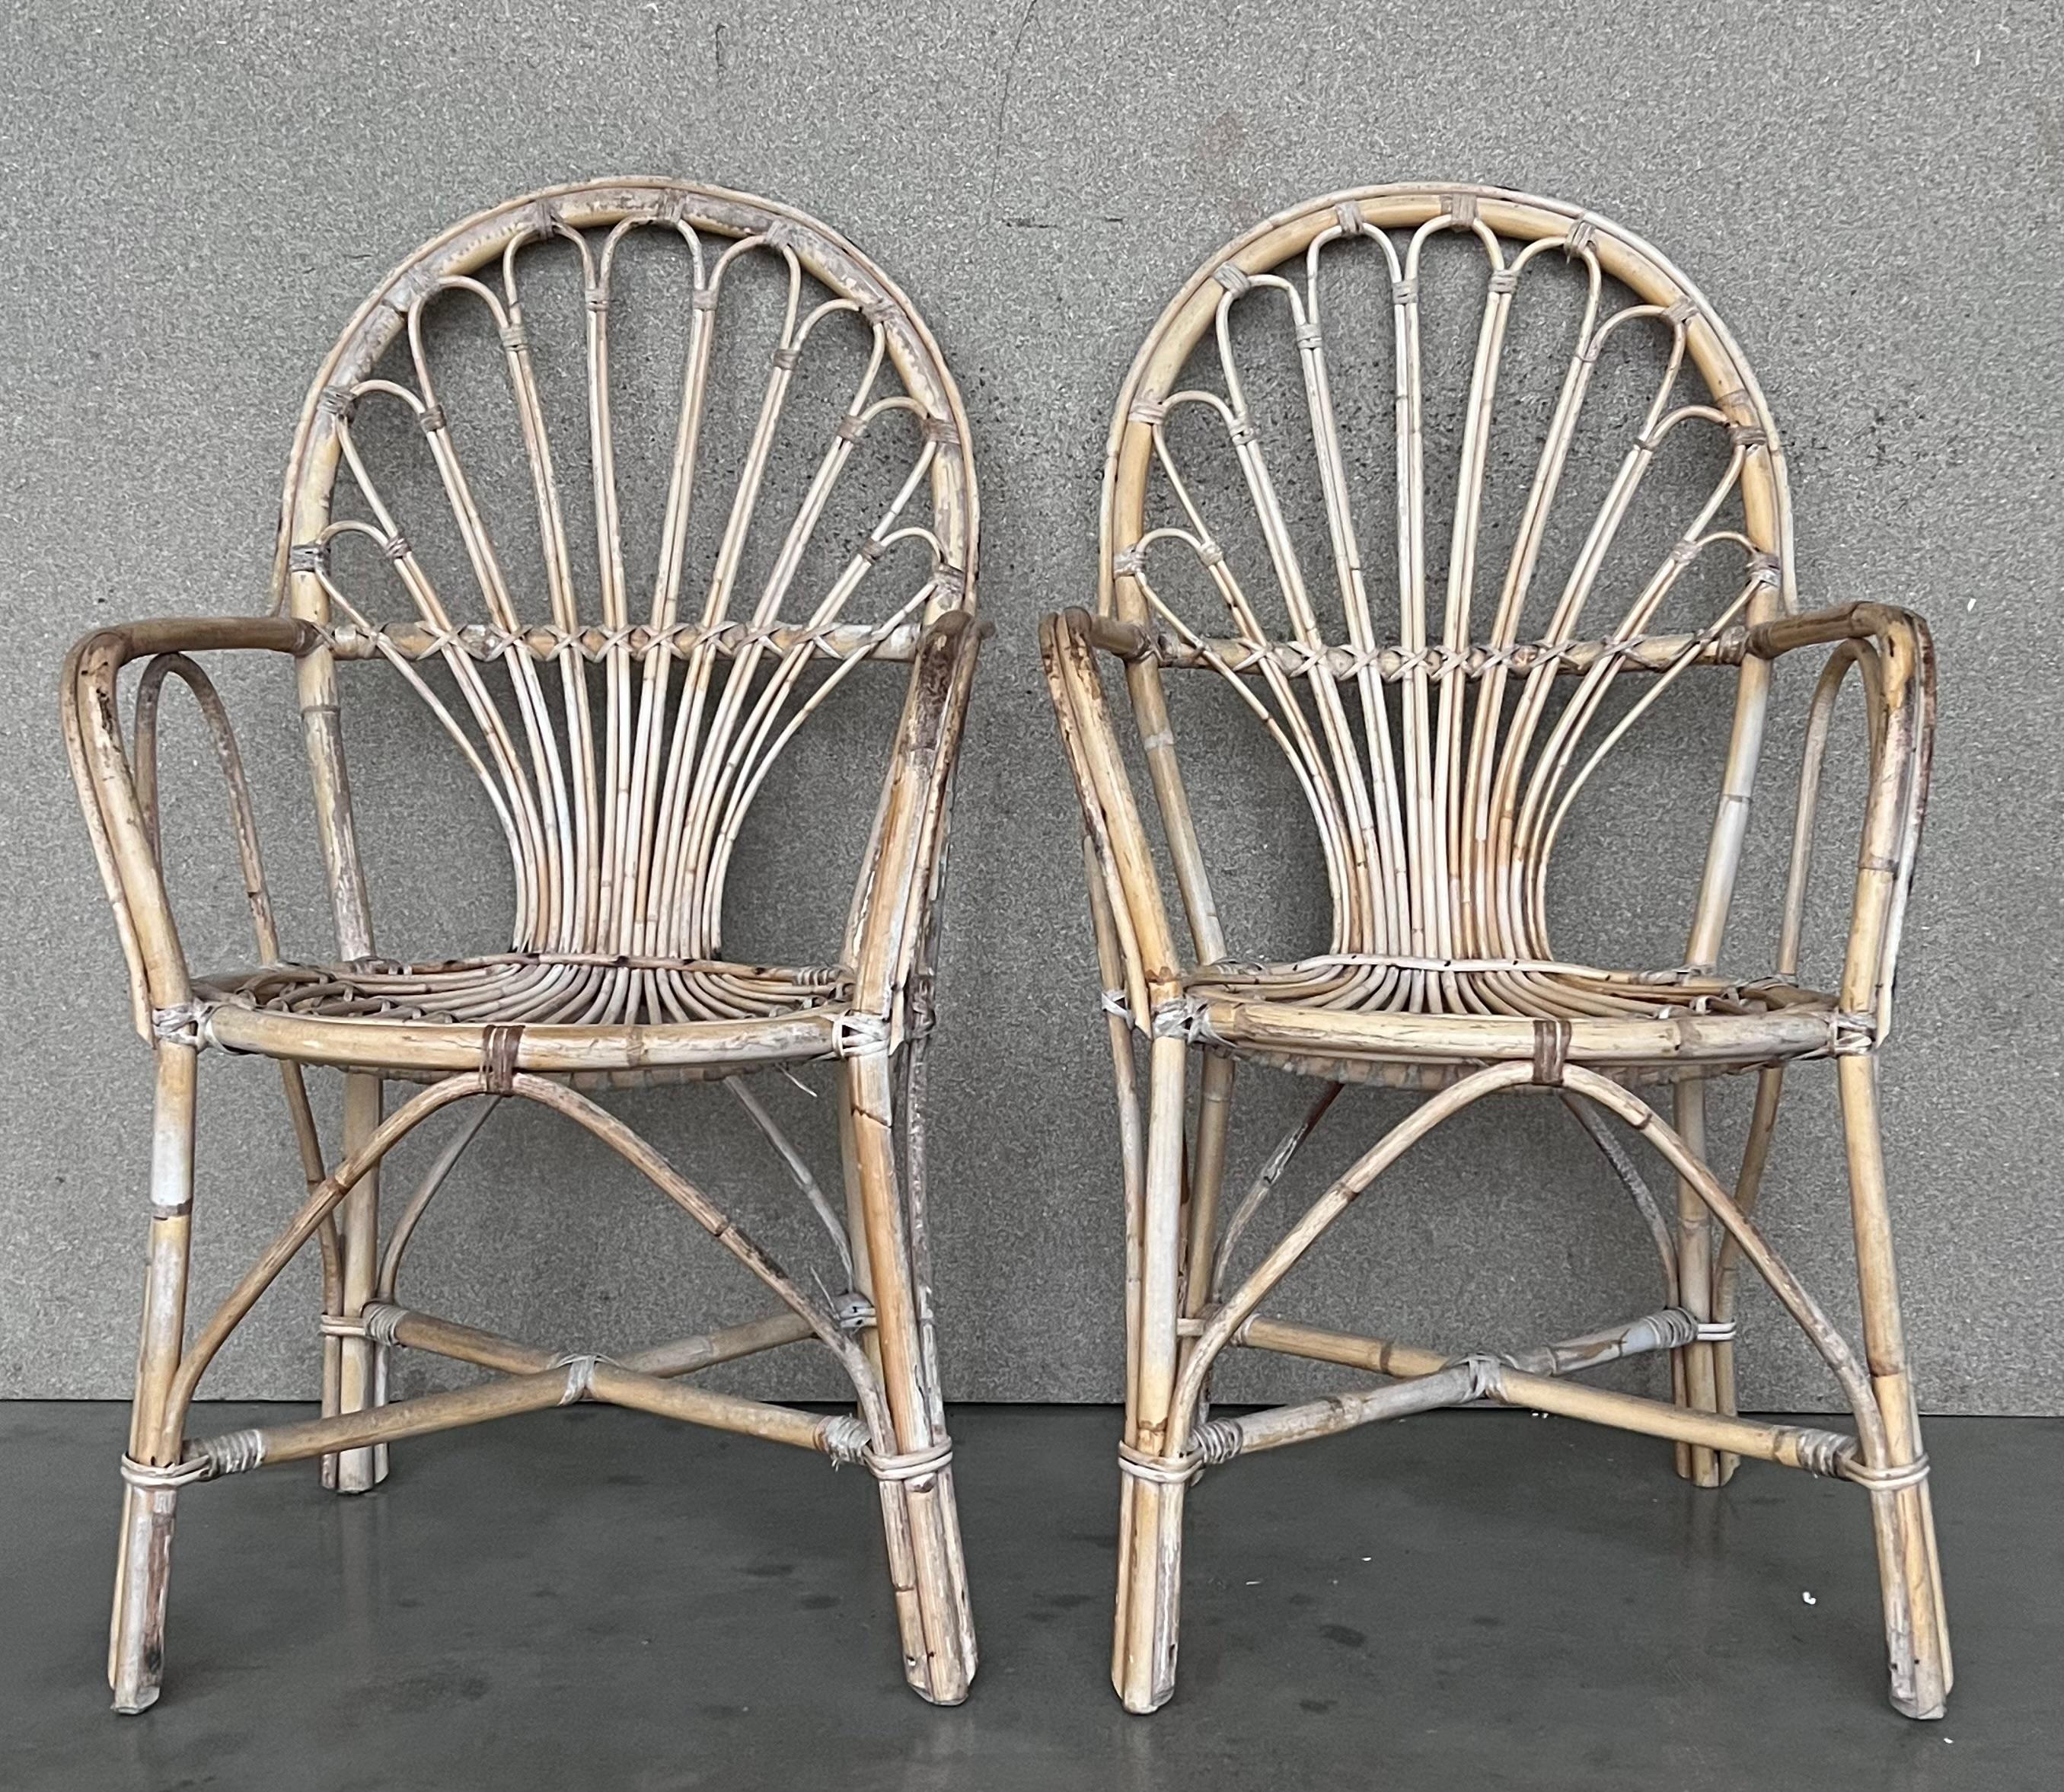 Paire de fauteuils espagnols en bambou des années 1960 avec dossier ovale
Restauré.